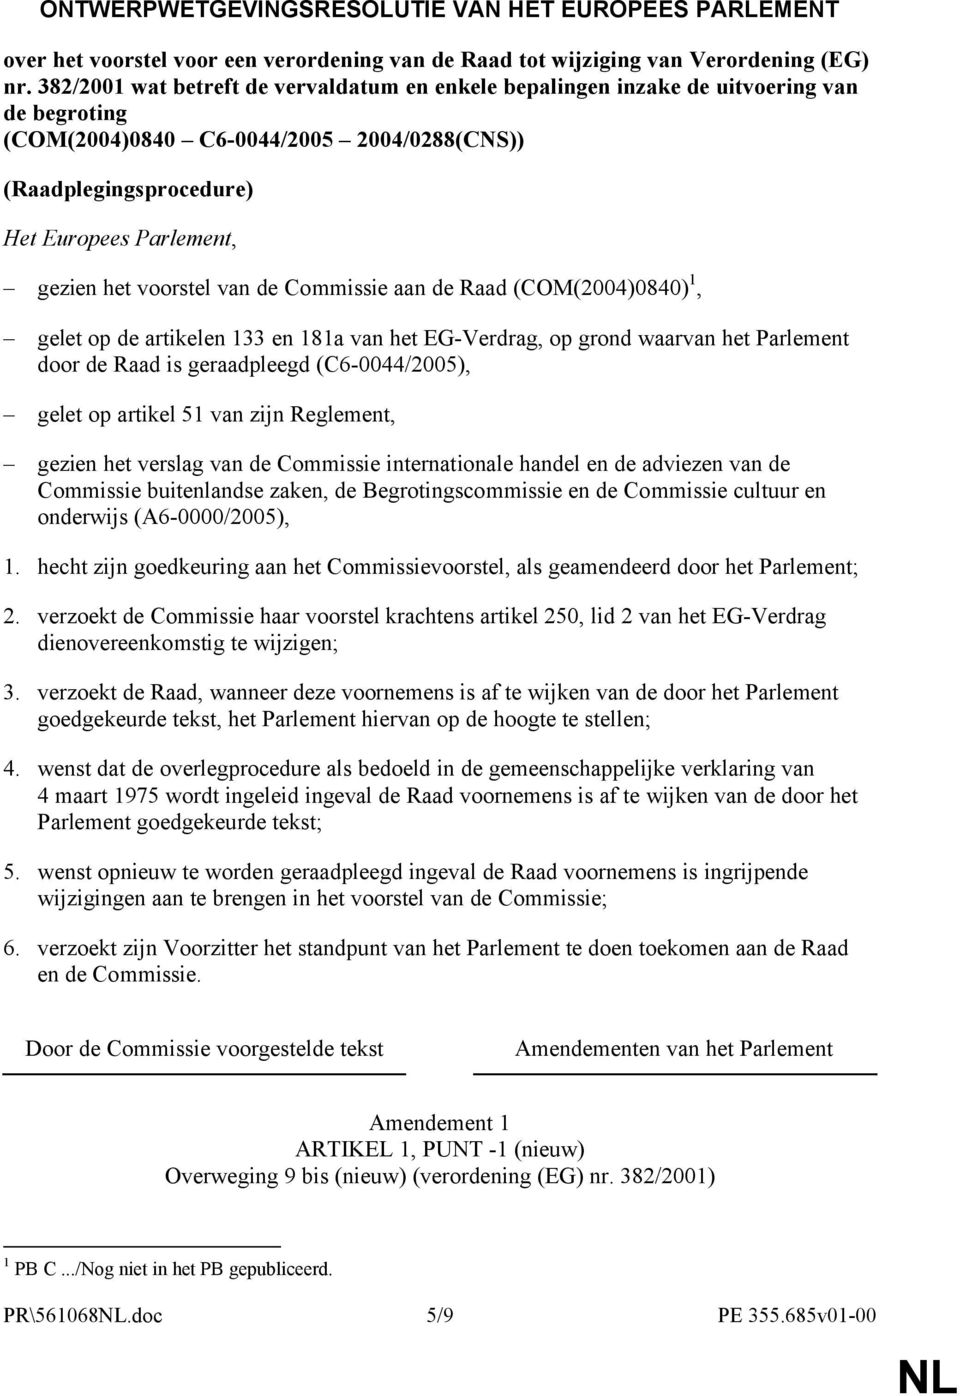 voorstel van de Commissie aan de Raad (COM(2004)0840) 1, gelet op de artikelen 133 en 181a van het EG-Verdrag, op grond waarvan het Parlement door de Raad is geraadpleegd (C6-0044/2005), gelet op